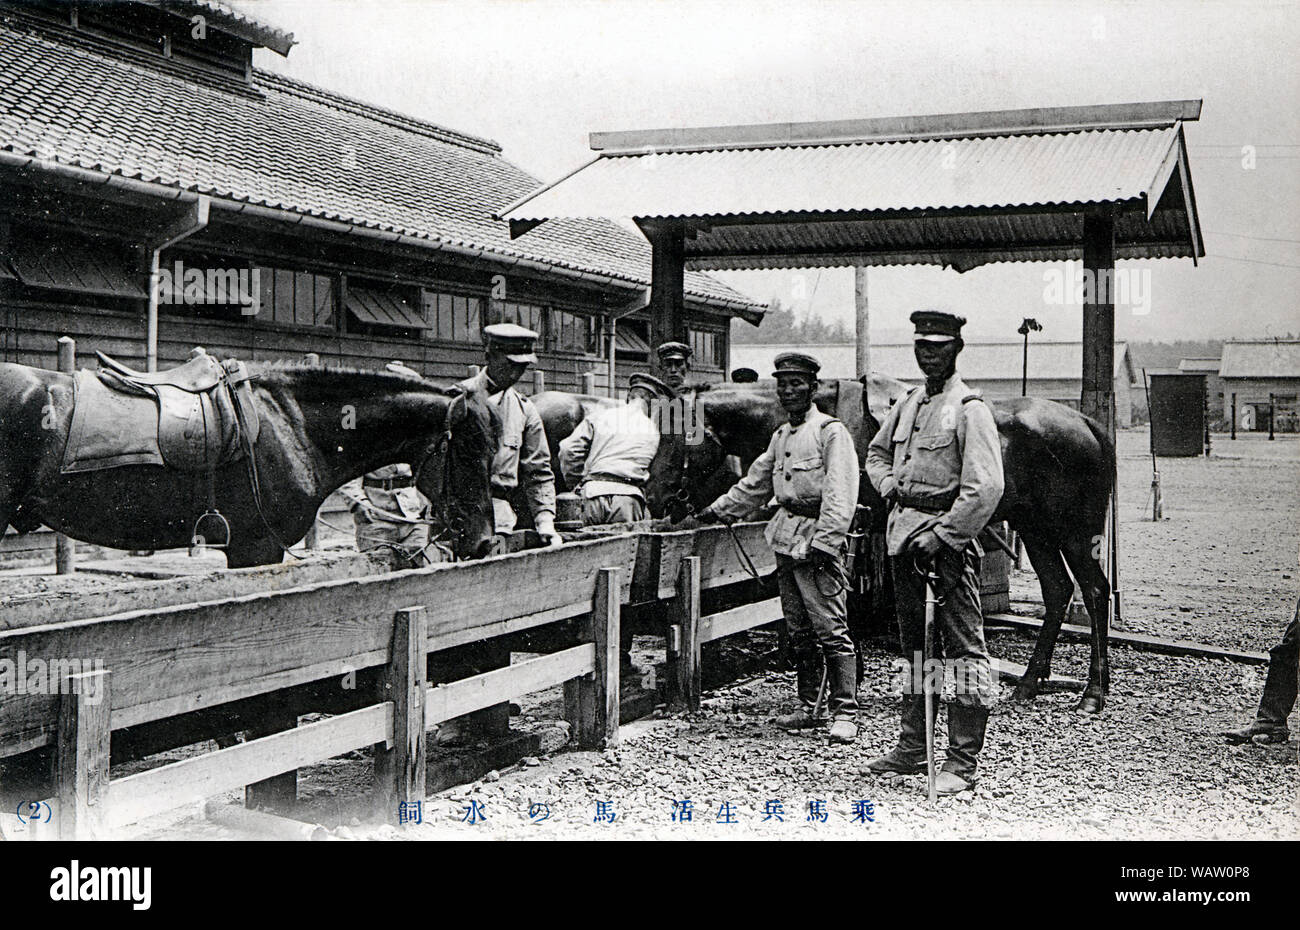 [ 1910s Japón - caballería japonesa ] - Japonés en la base de caballería, abrevar a los caballos. Vintage del siglo xx postal. Foto de stock